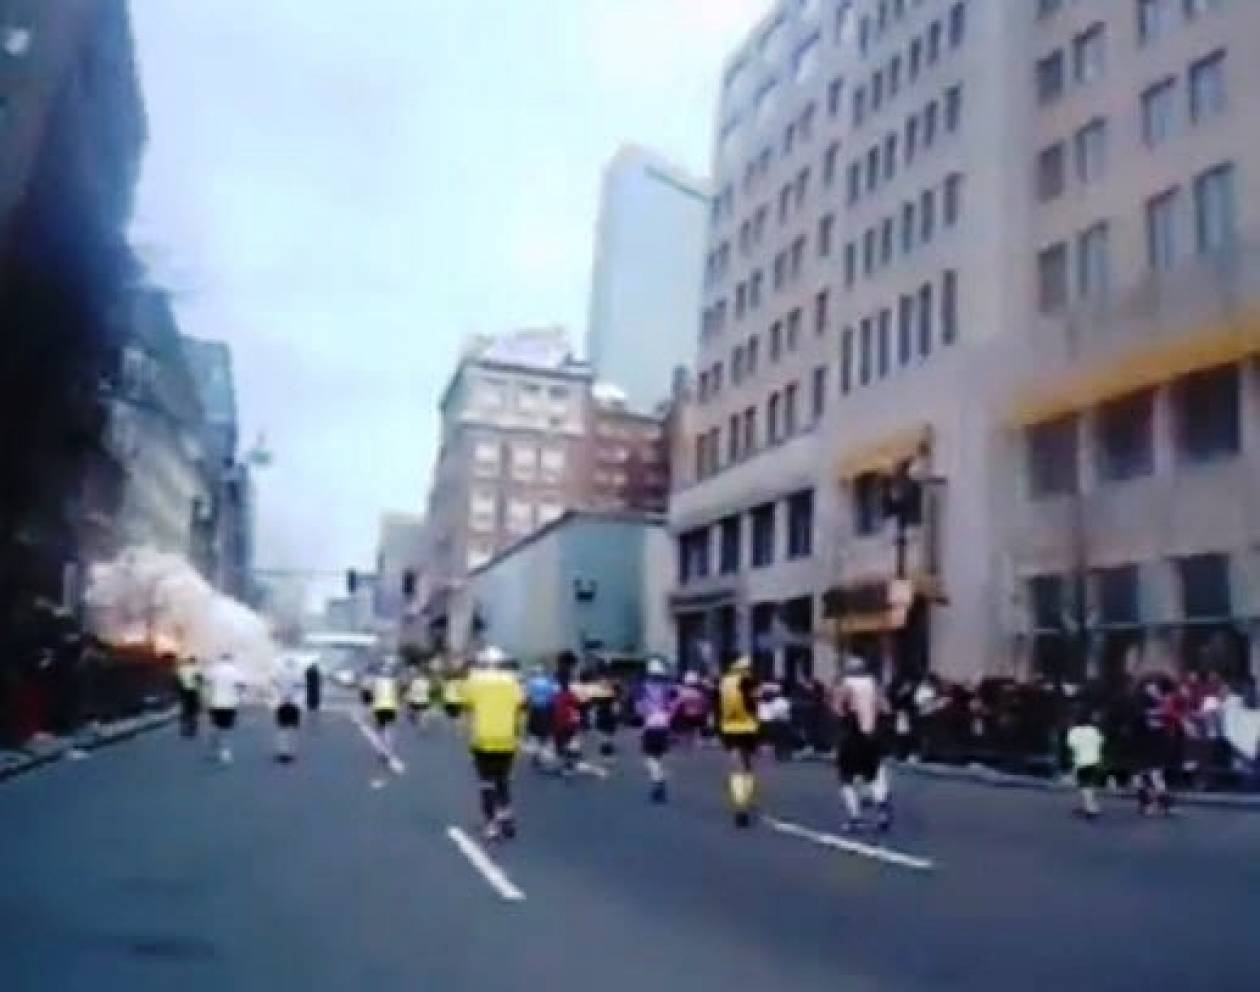 Μαραθώνιος Βοστώνης: Νέο σοκαριστικό βίντεο από την πρώτη έκρηξη!